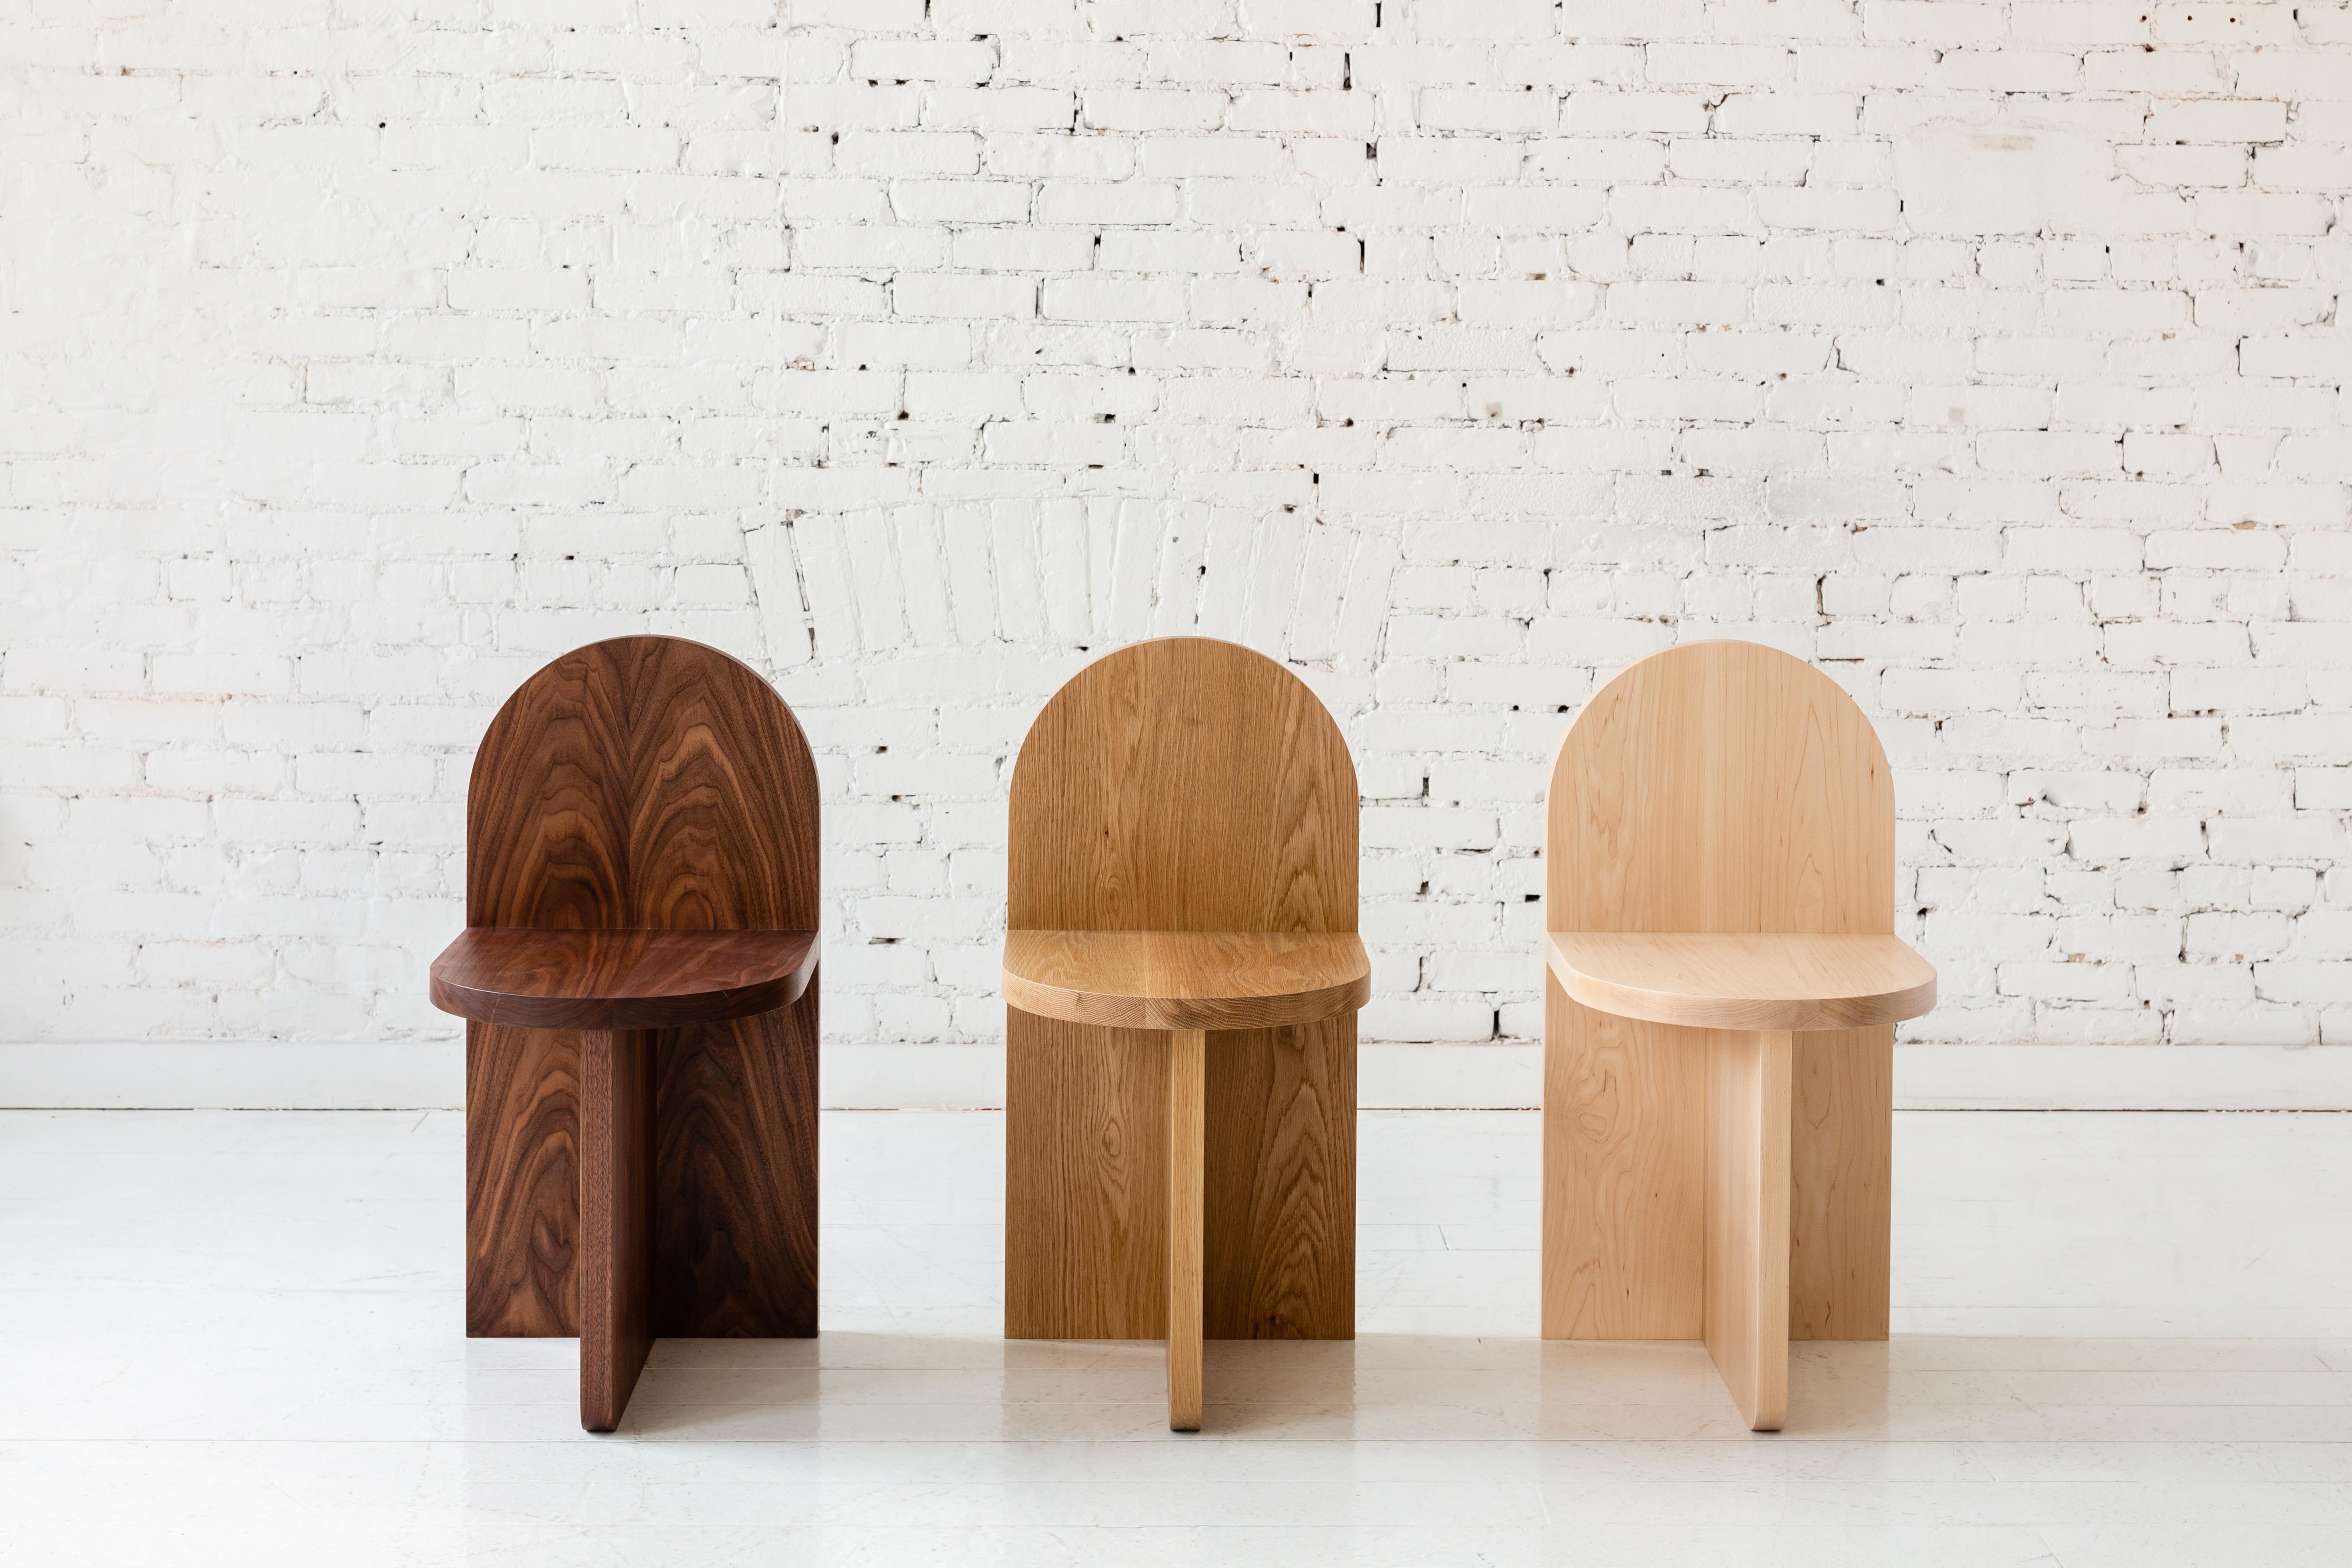 Cette chaise minimale est constituée de trois plans qui se croisent, le dossier ressemblant à une forme traditionnelle de pierre tombale. 

Disponible dans une variété de bois. Whiting en noyer, chêne blanc et frêne. Également disponible en érable